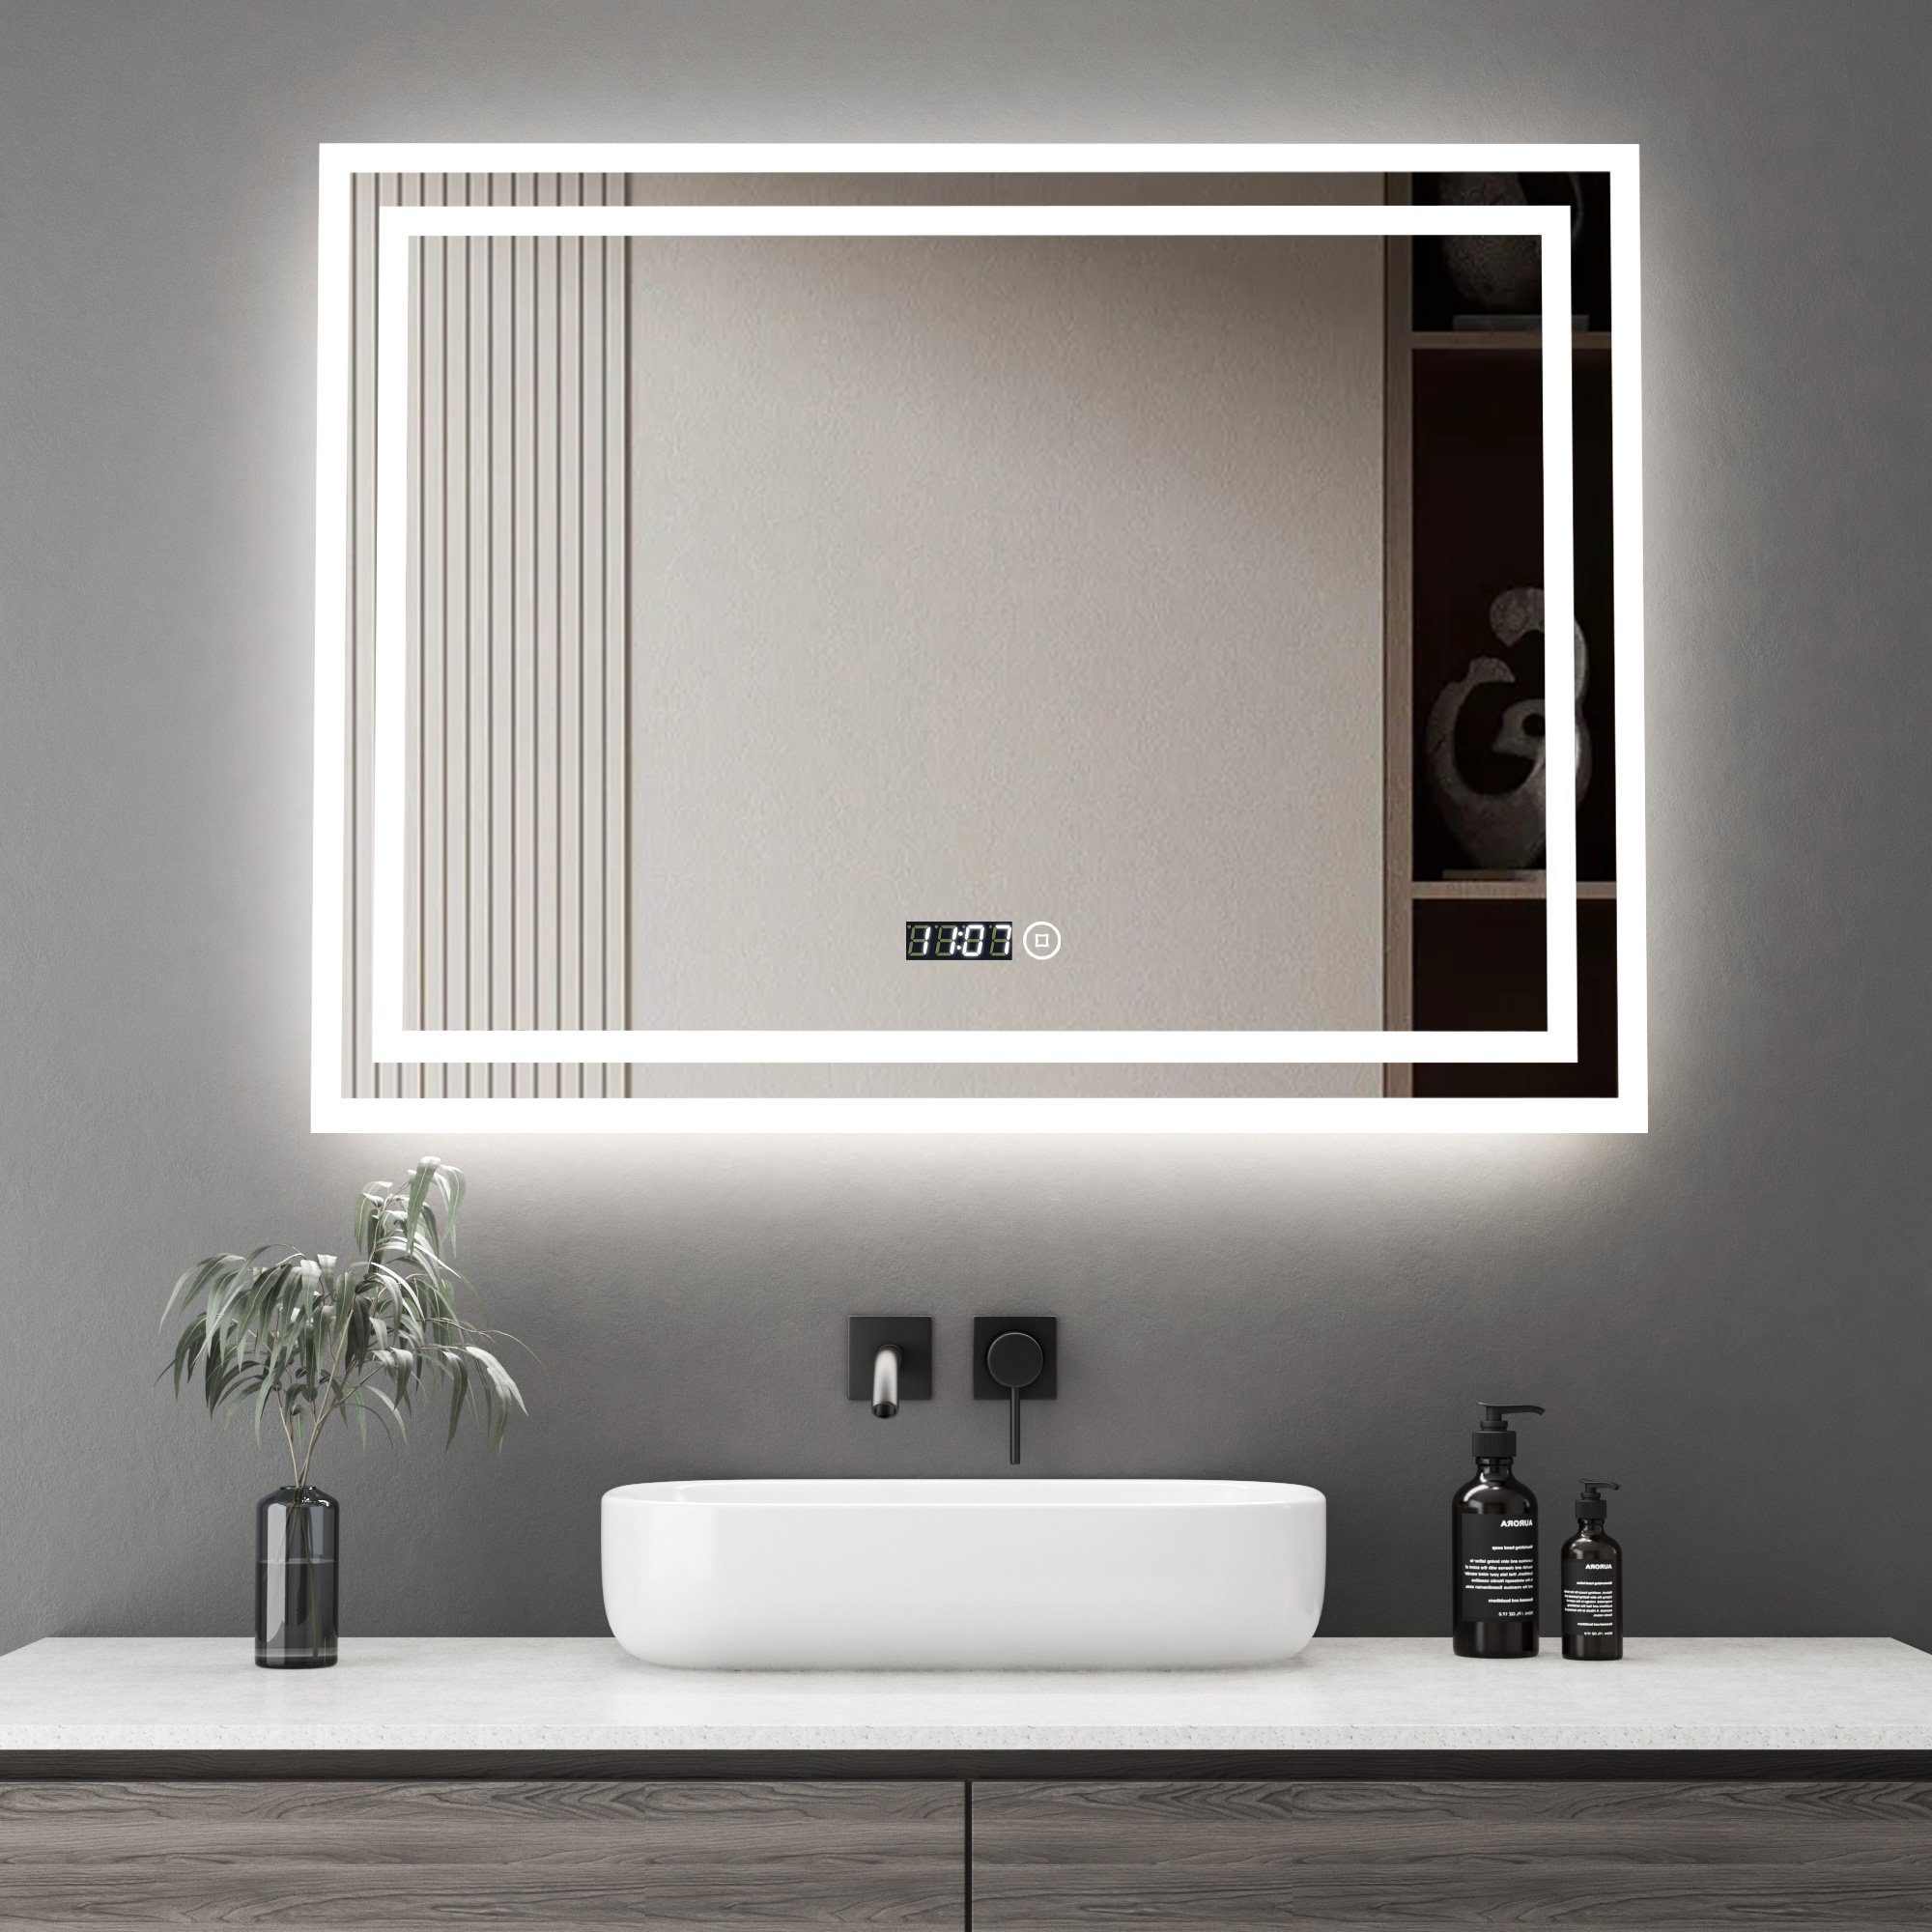 WDWRITTI Wandspiegel Badspiegel Led 80x60 mit Uhr 3Lichtfarben Helligkeit dimmbar (Spiegel mit beleuchtung, Speicherfunktion), Energiesparend, IP44